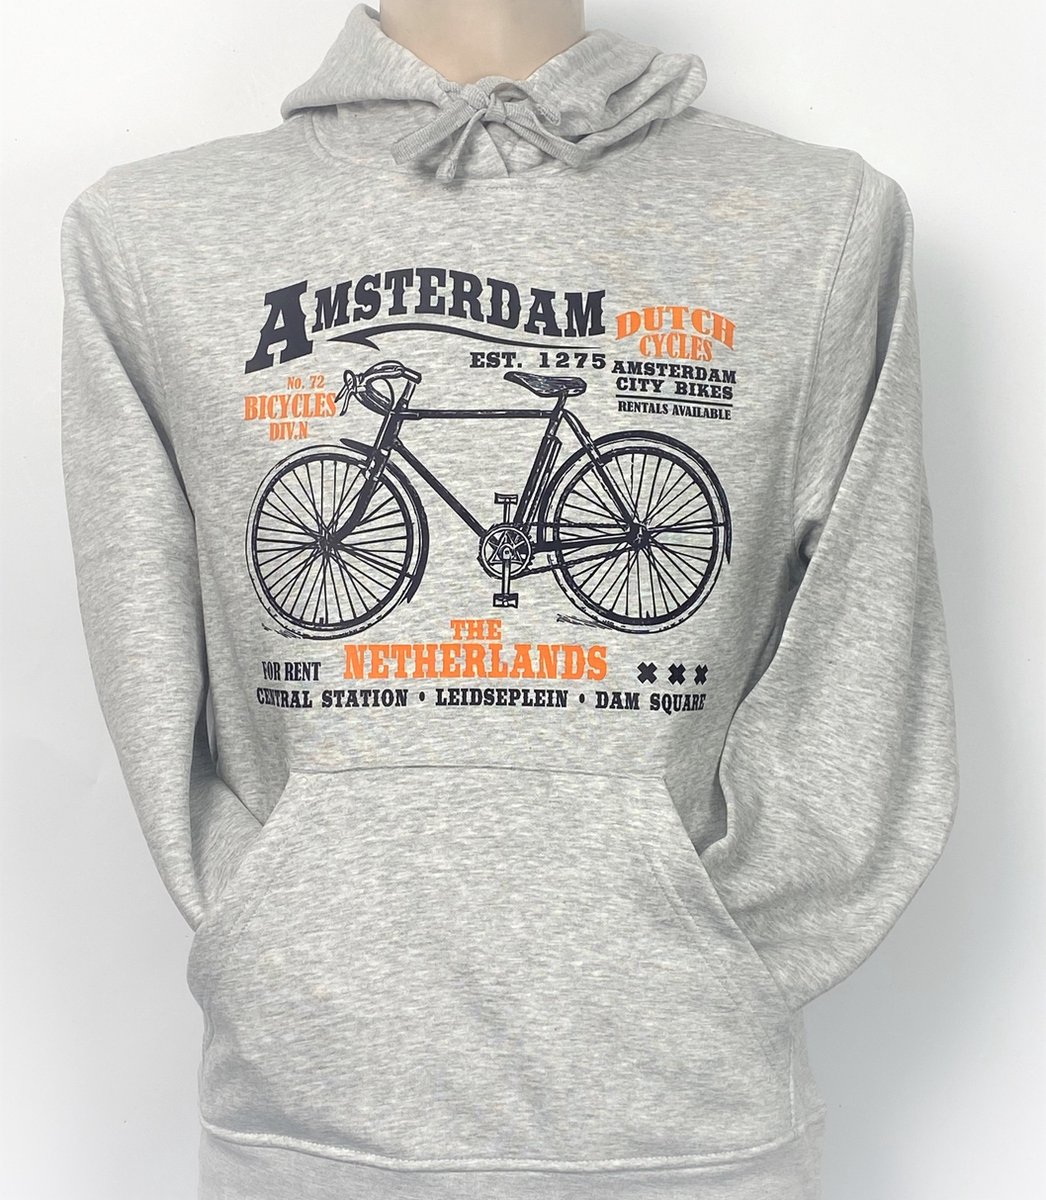 Hooded Sweater - Met Trekkoord - Capuchon - Chill - Trui - Vest - met capuchon - Outdoor - Fiets - 1275 -Amsterdam - Bike Town - Travel - Dam Square - City Bike - Sport Grey - Maat S